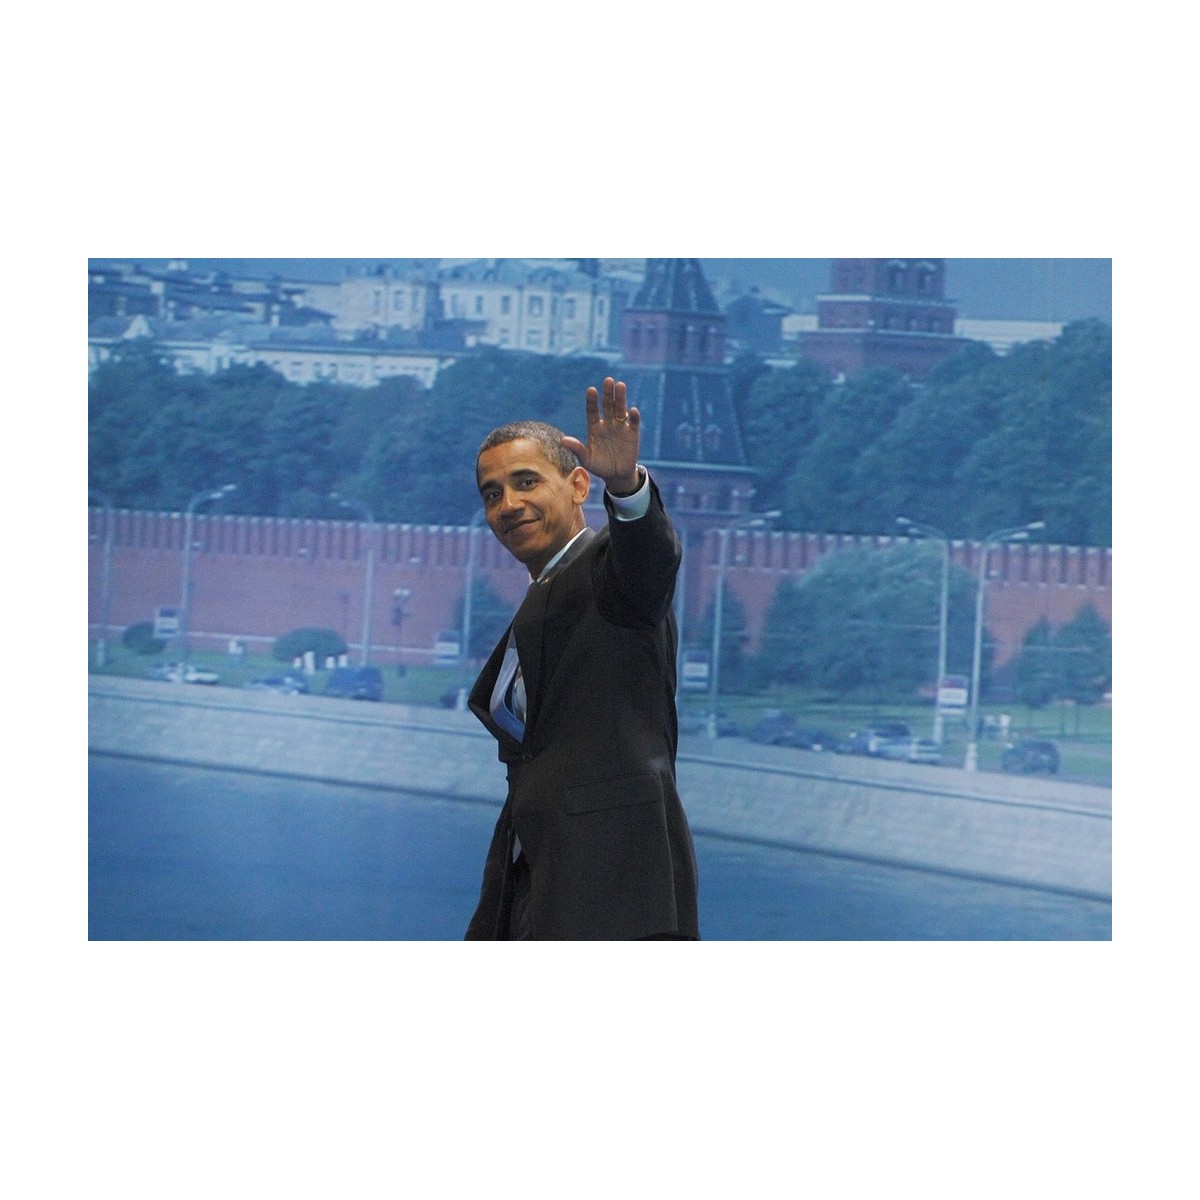 Photo Barack Obama